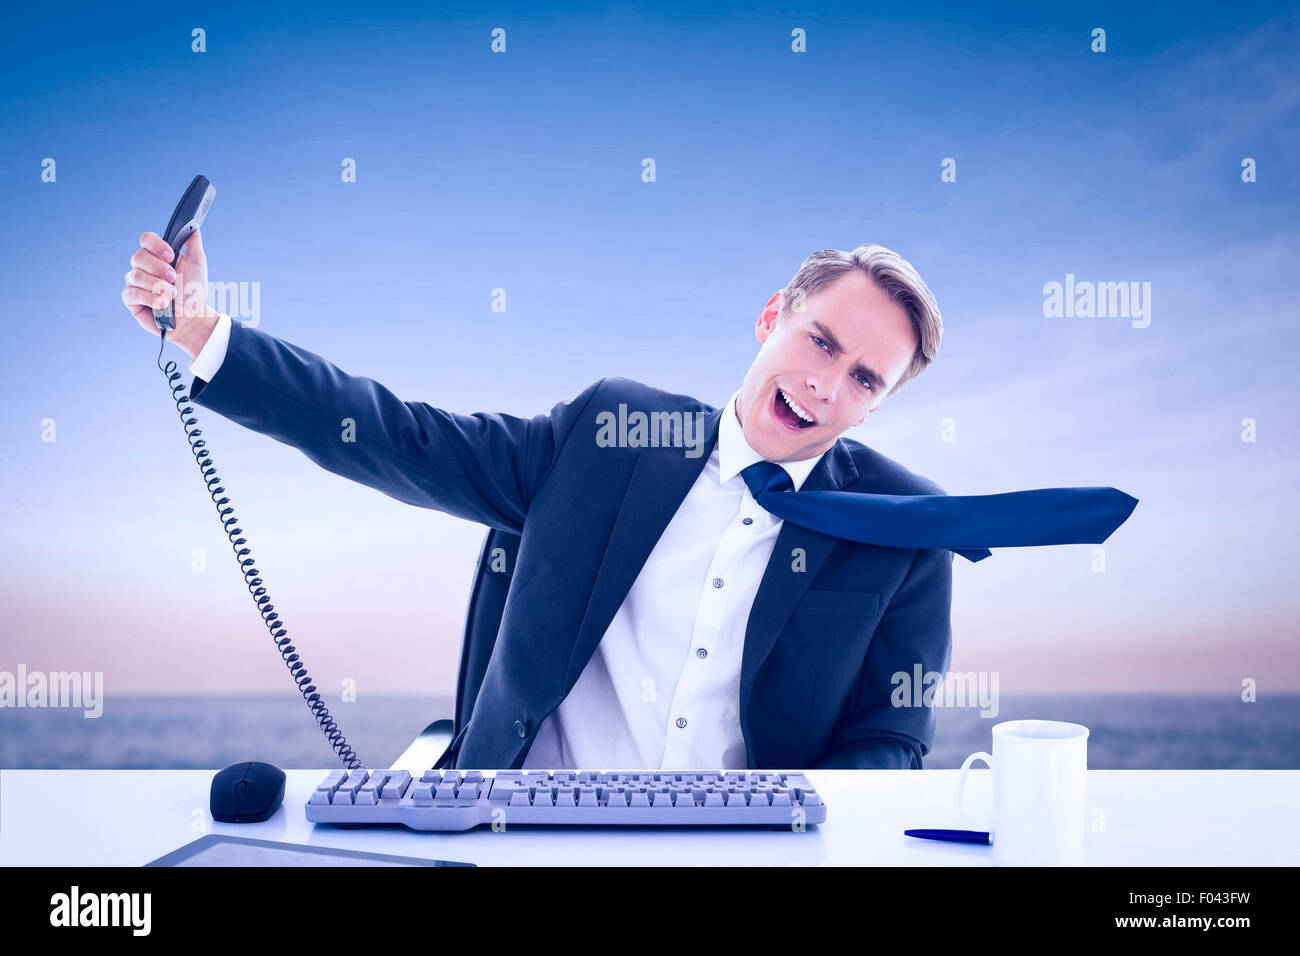 Immagine composita di imprenditore urlando come egli tiene fuori il telefono Foto Stock